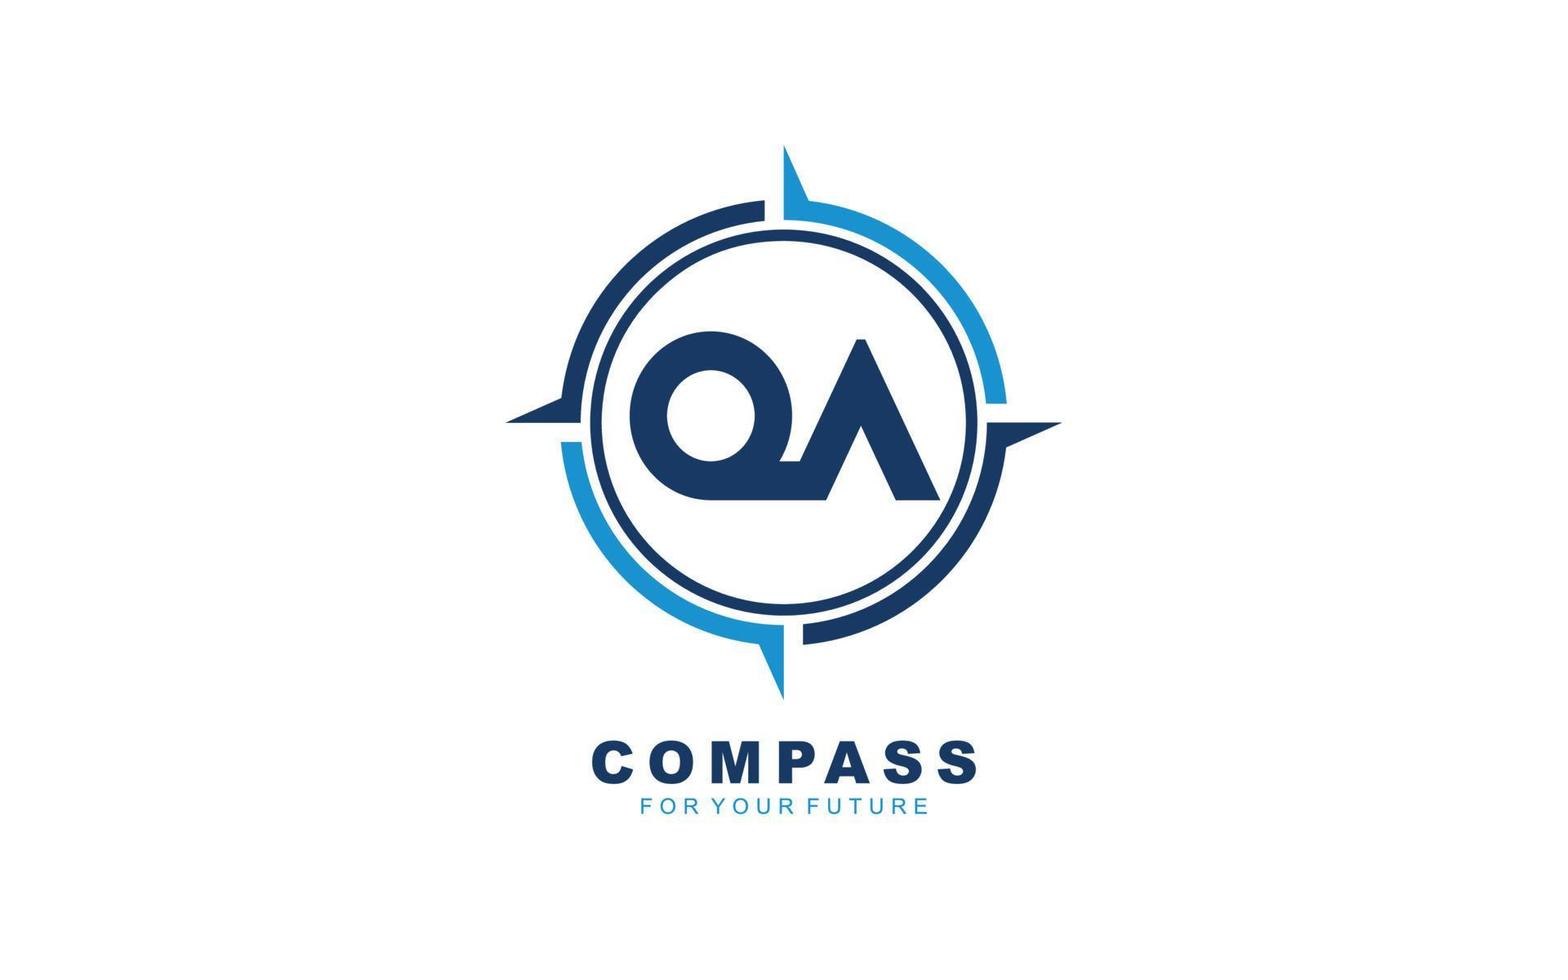 qa logo navigatie voor branding bedrijf. kompas sjabloon vector illustratie voor uw merk.